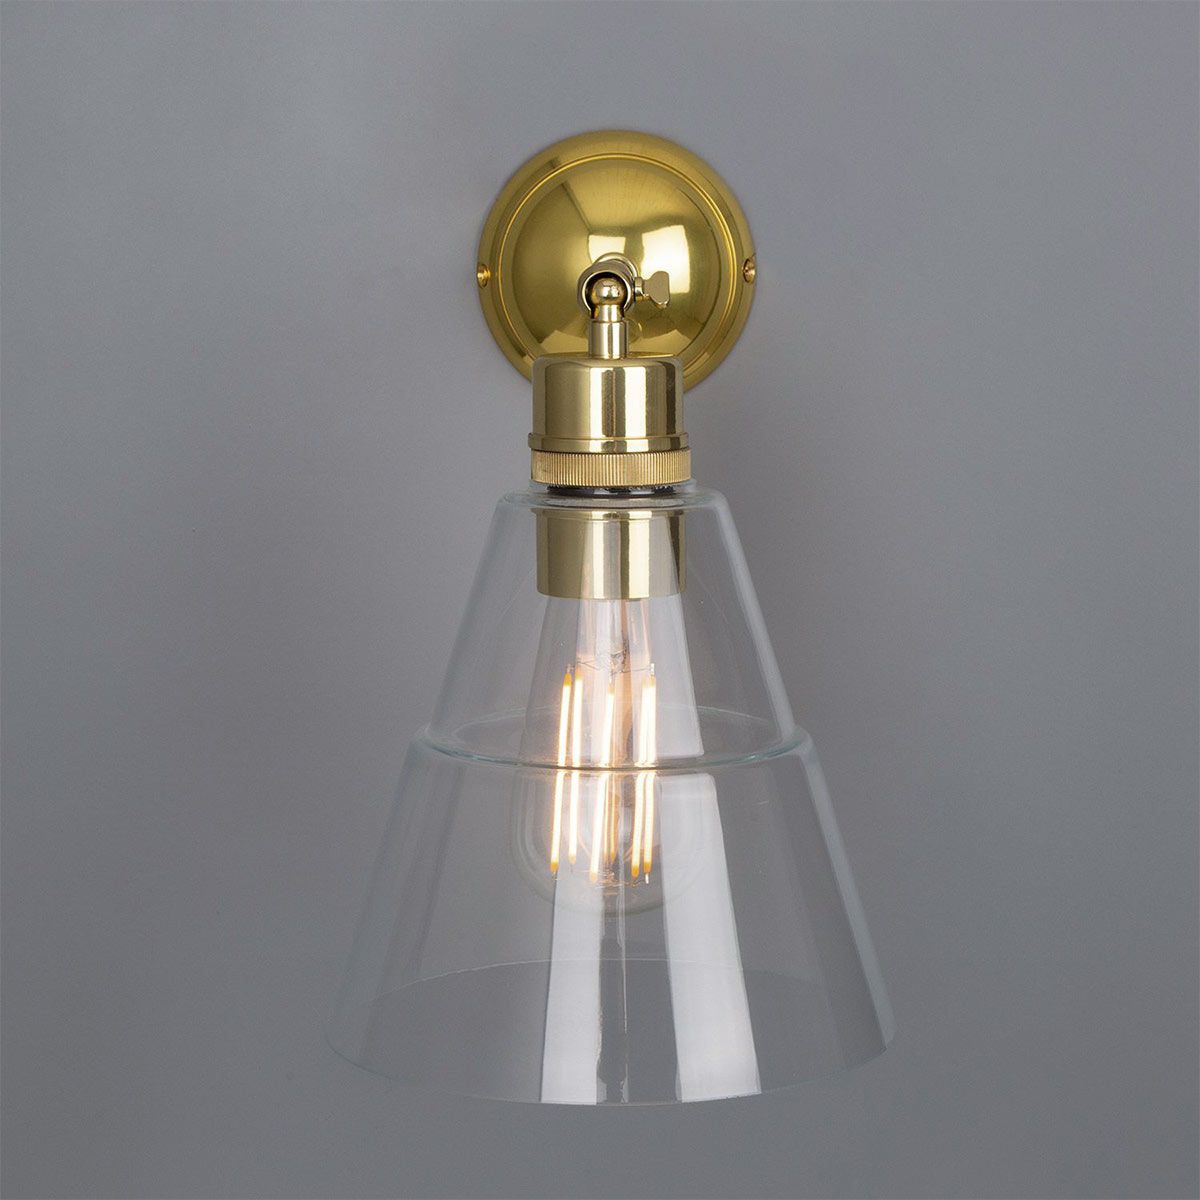 Schlichte kleine Wandleuchte mit abgestuftem Glasschirm: Die Wandlampe mit Kegal-Glasschirm, hier in Messing poliert